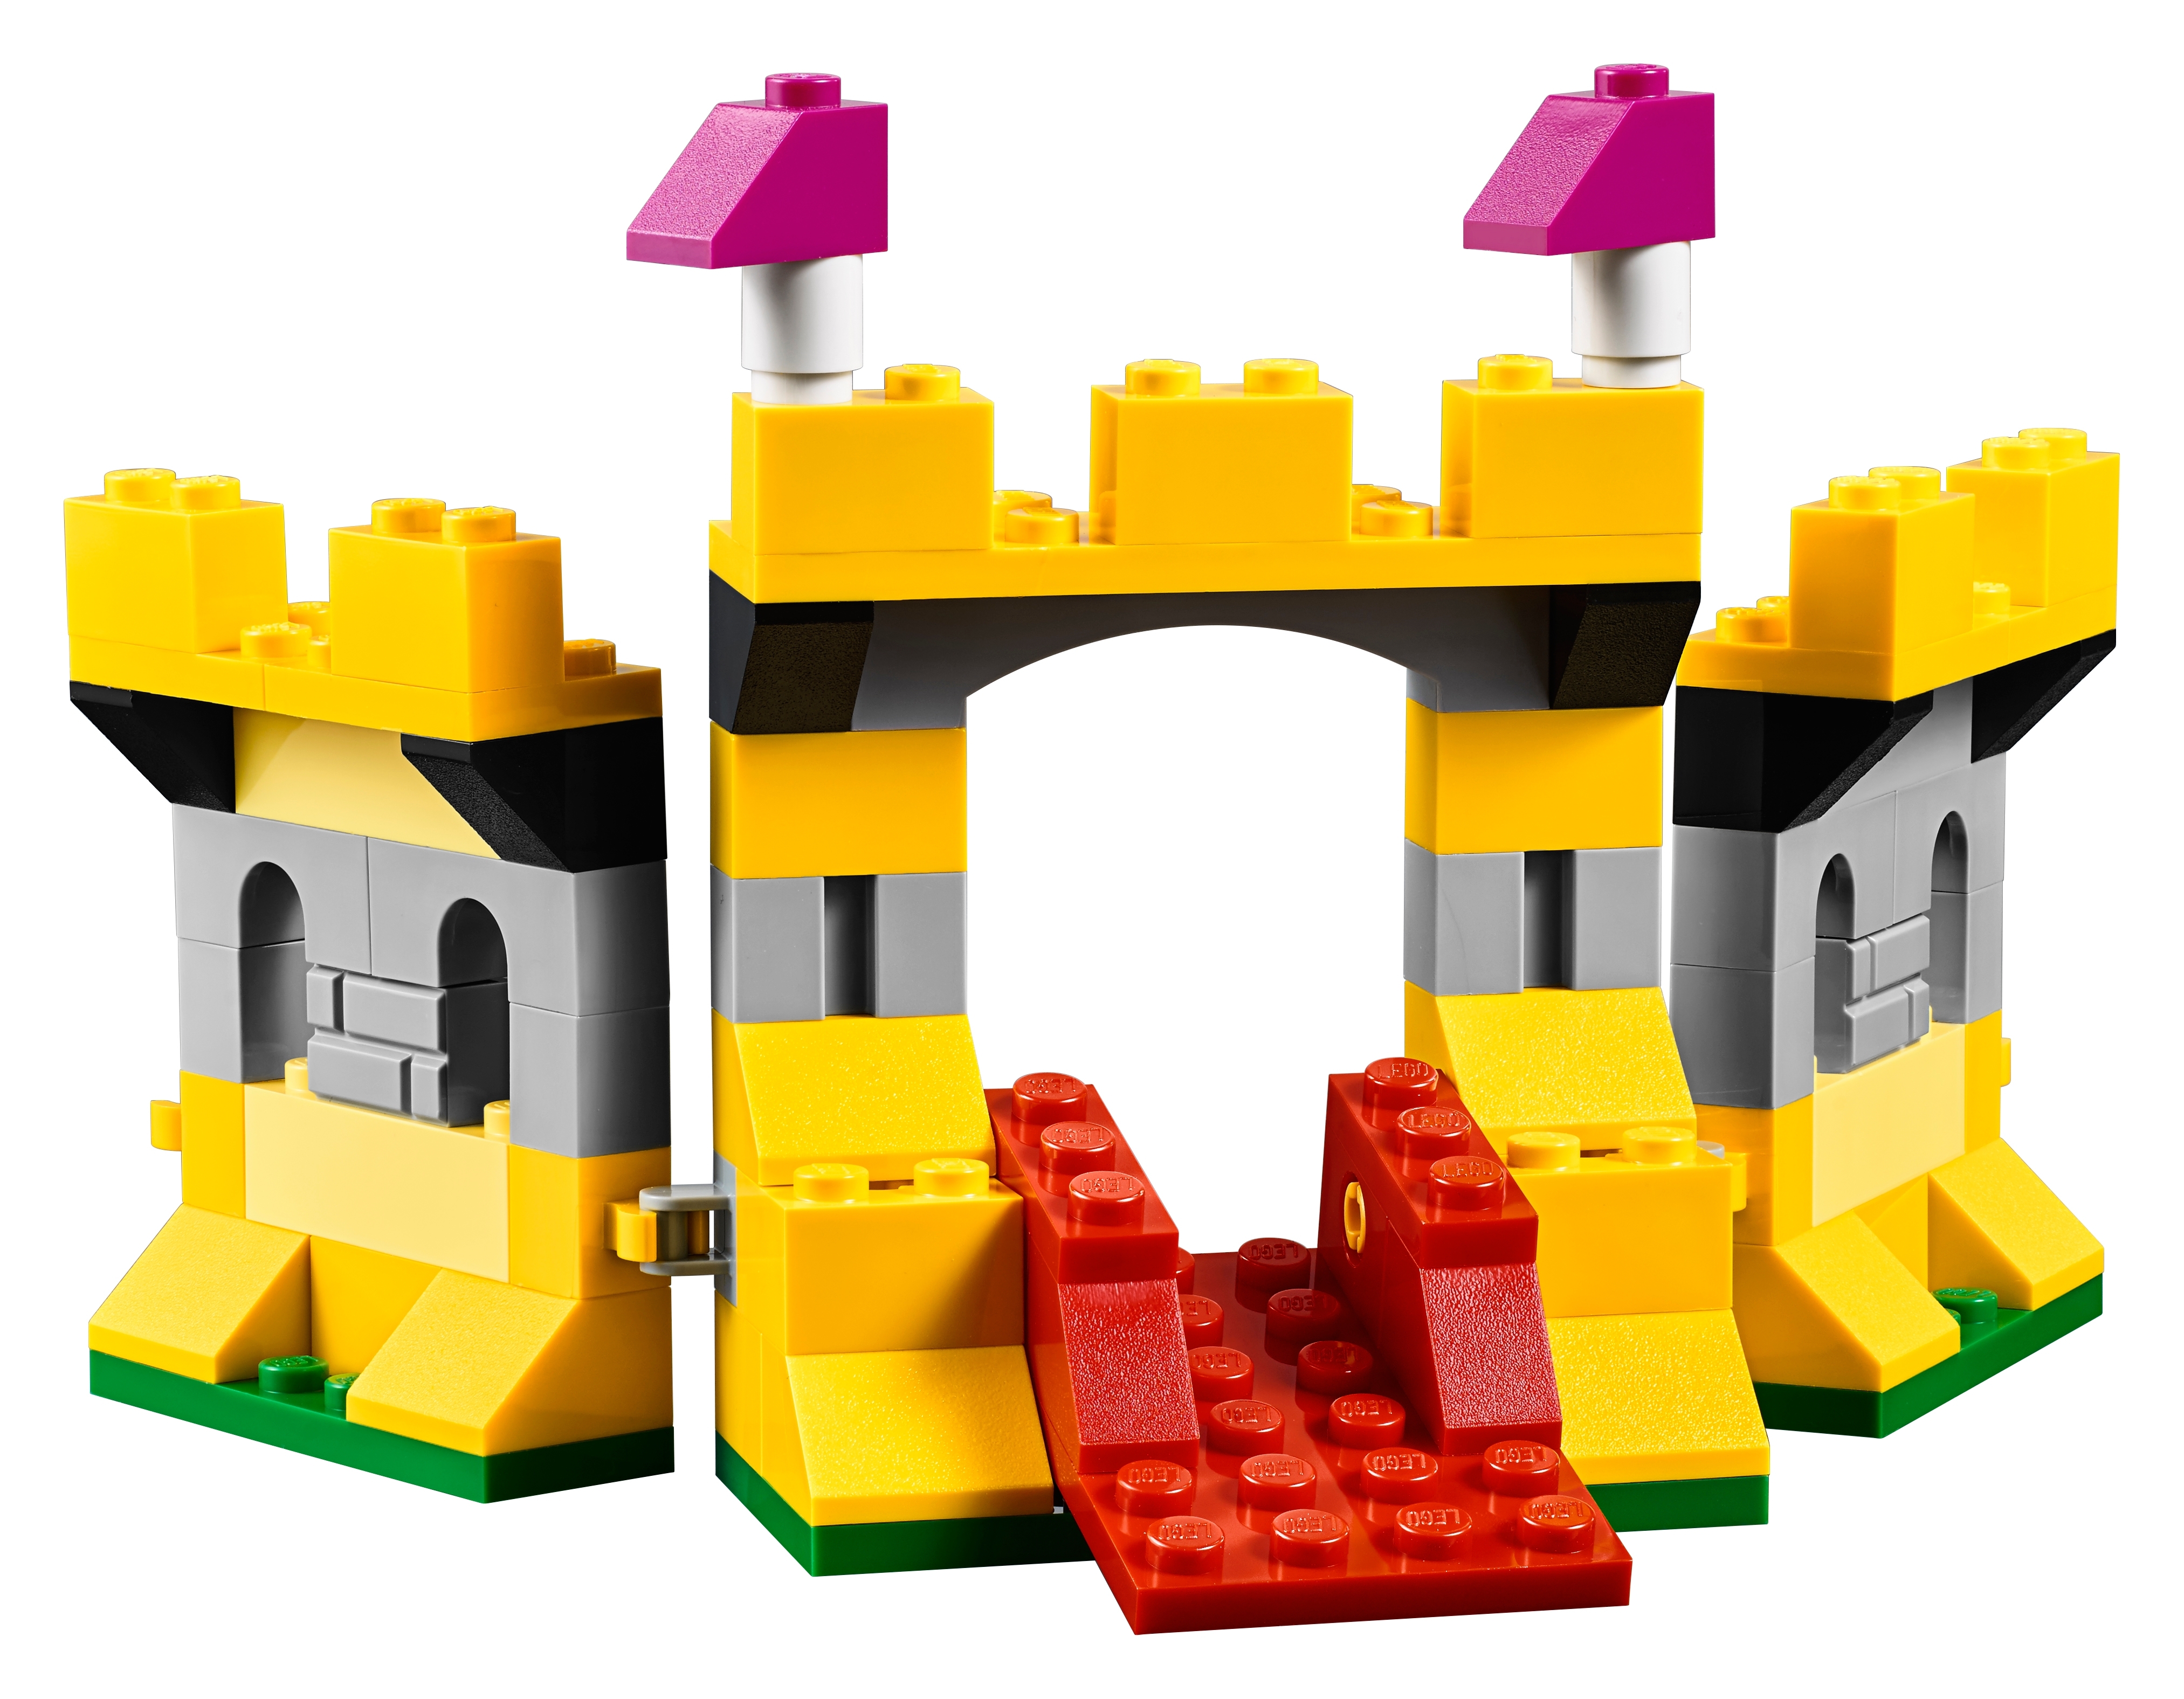 Que contiene la caja de LEGO CLASSIC de 1500 piezas (10717)